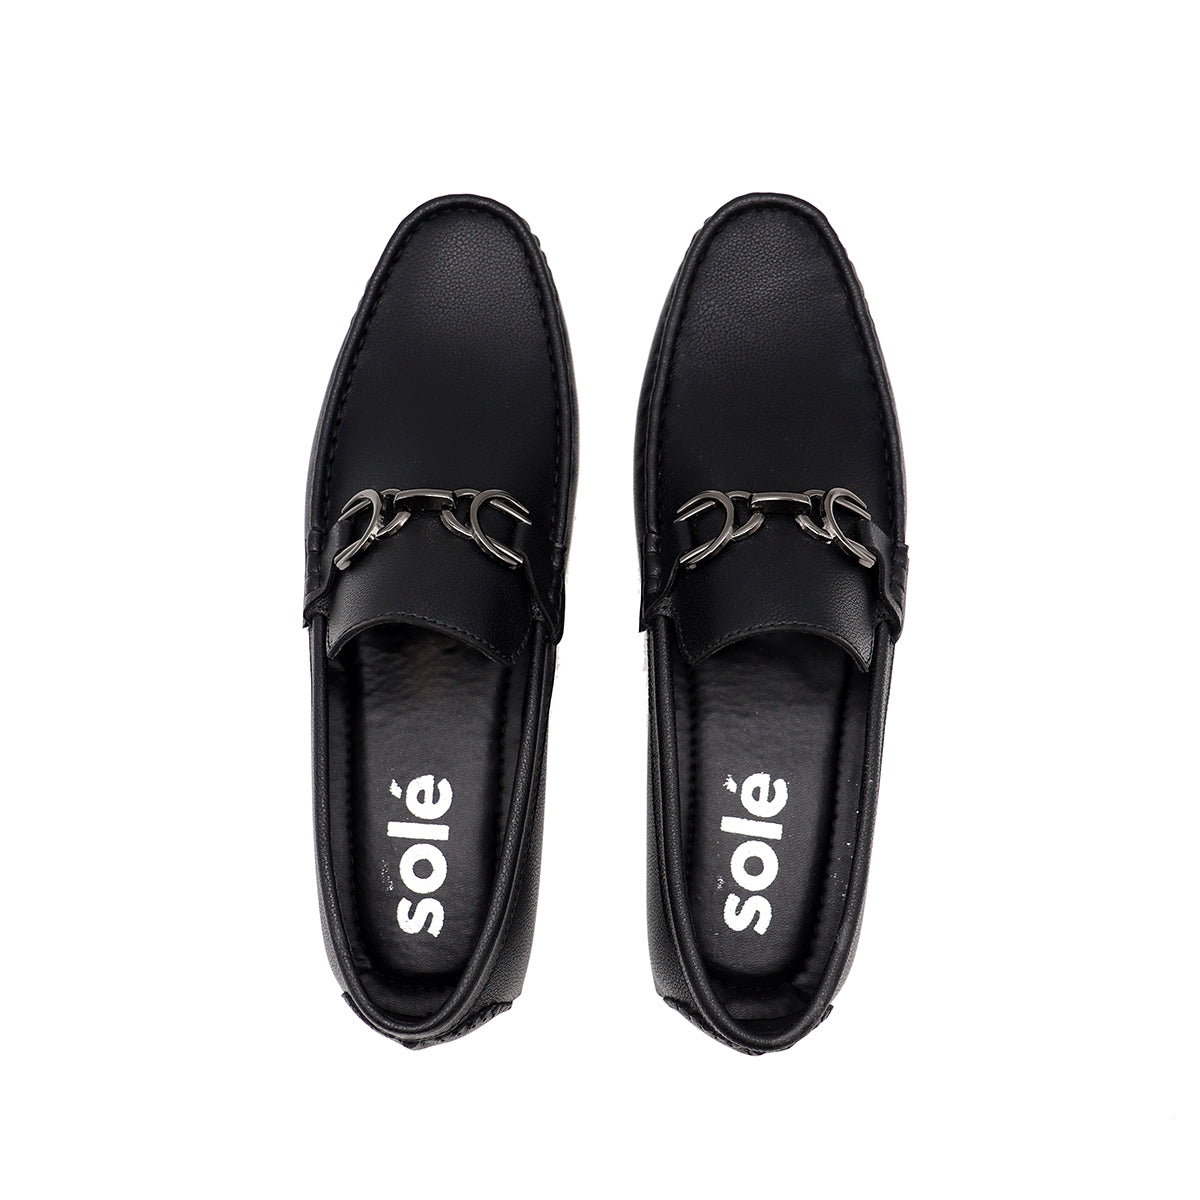 Black Loafer Slip On 165105 – Heels Shoes